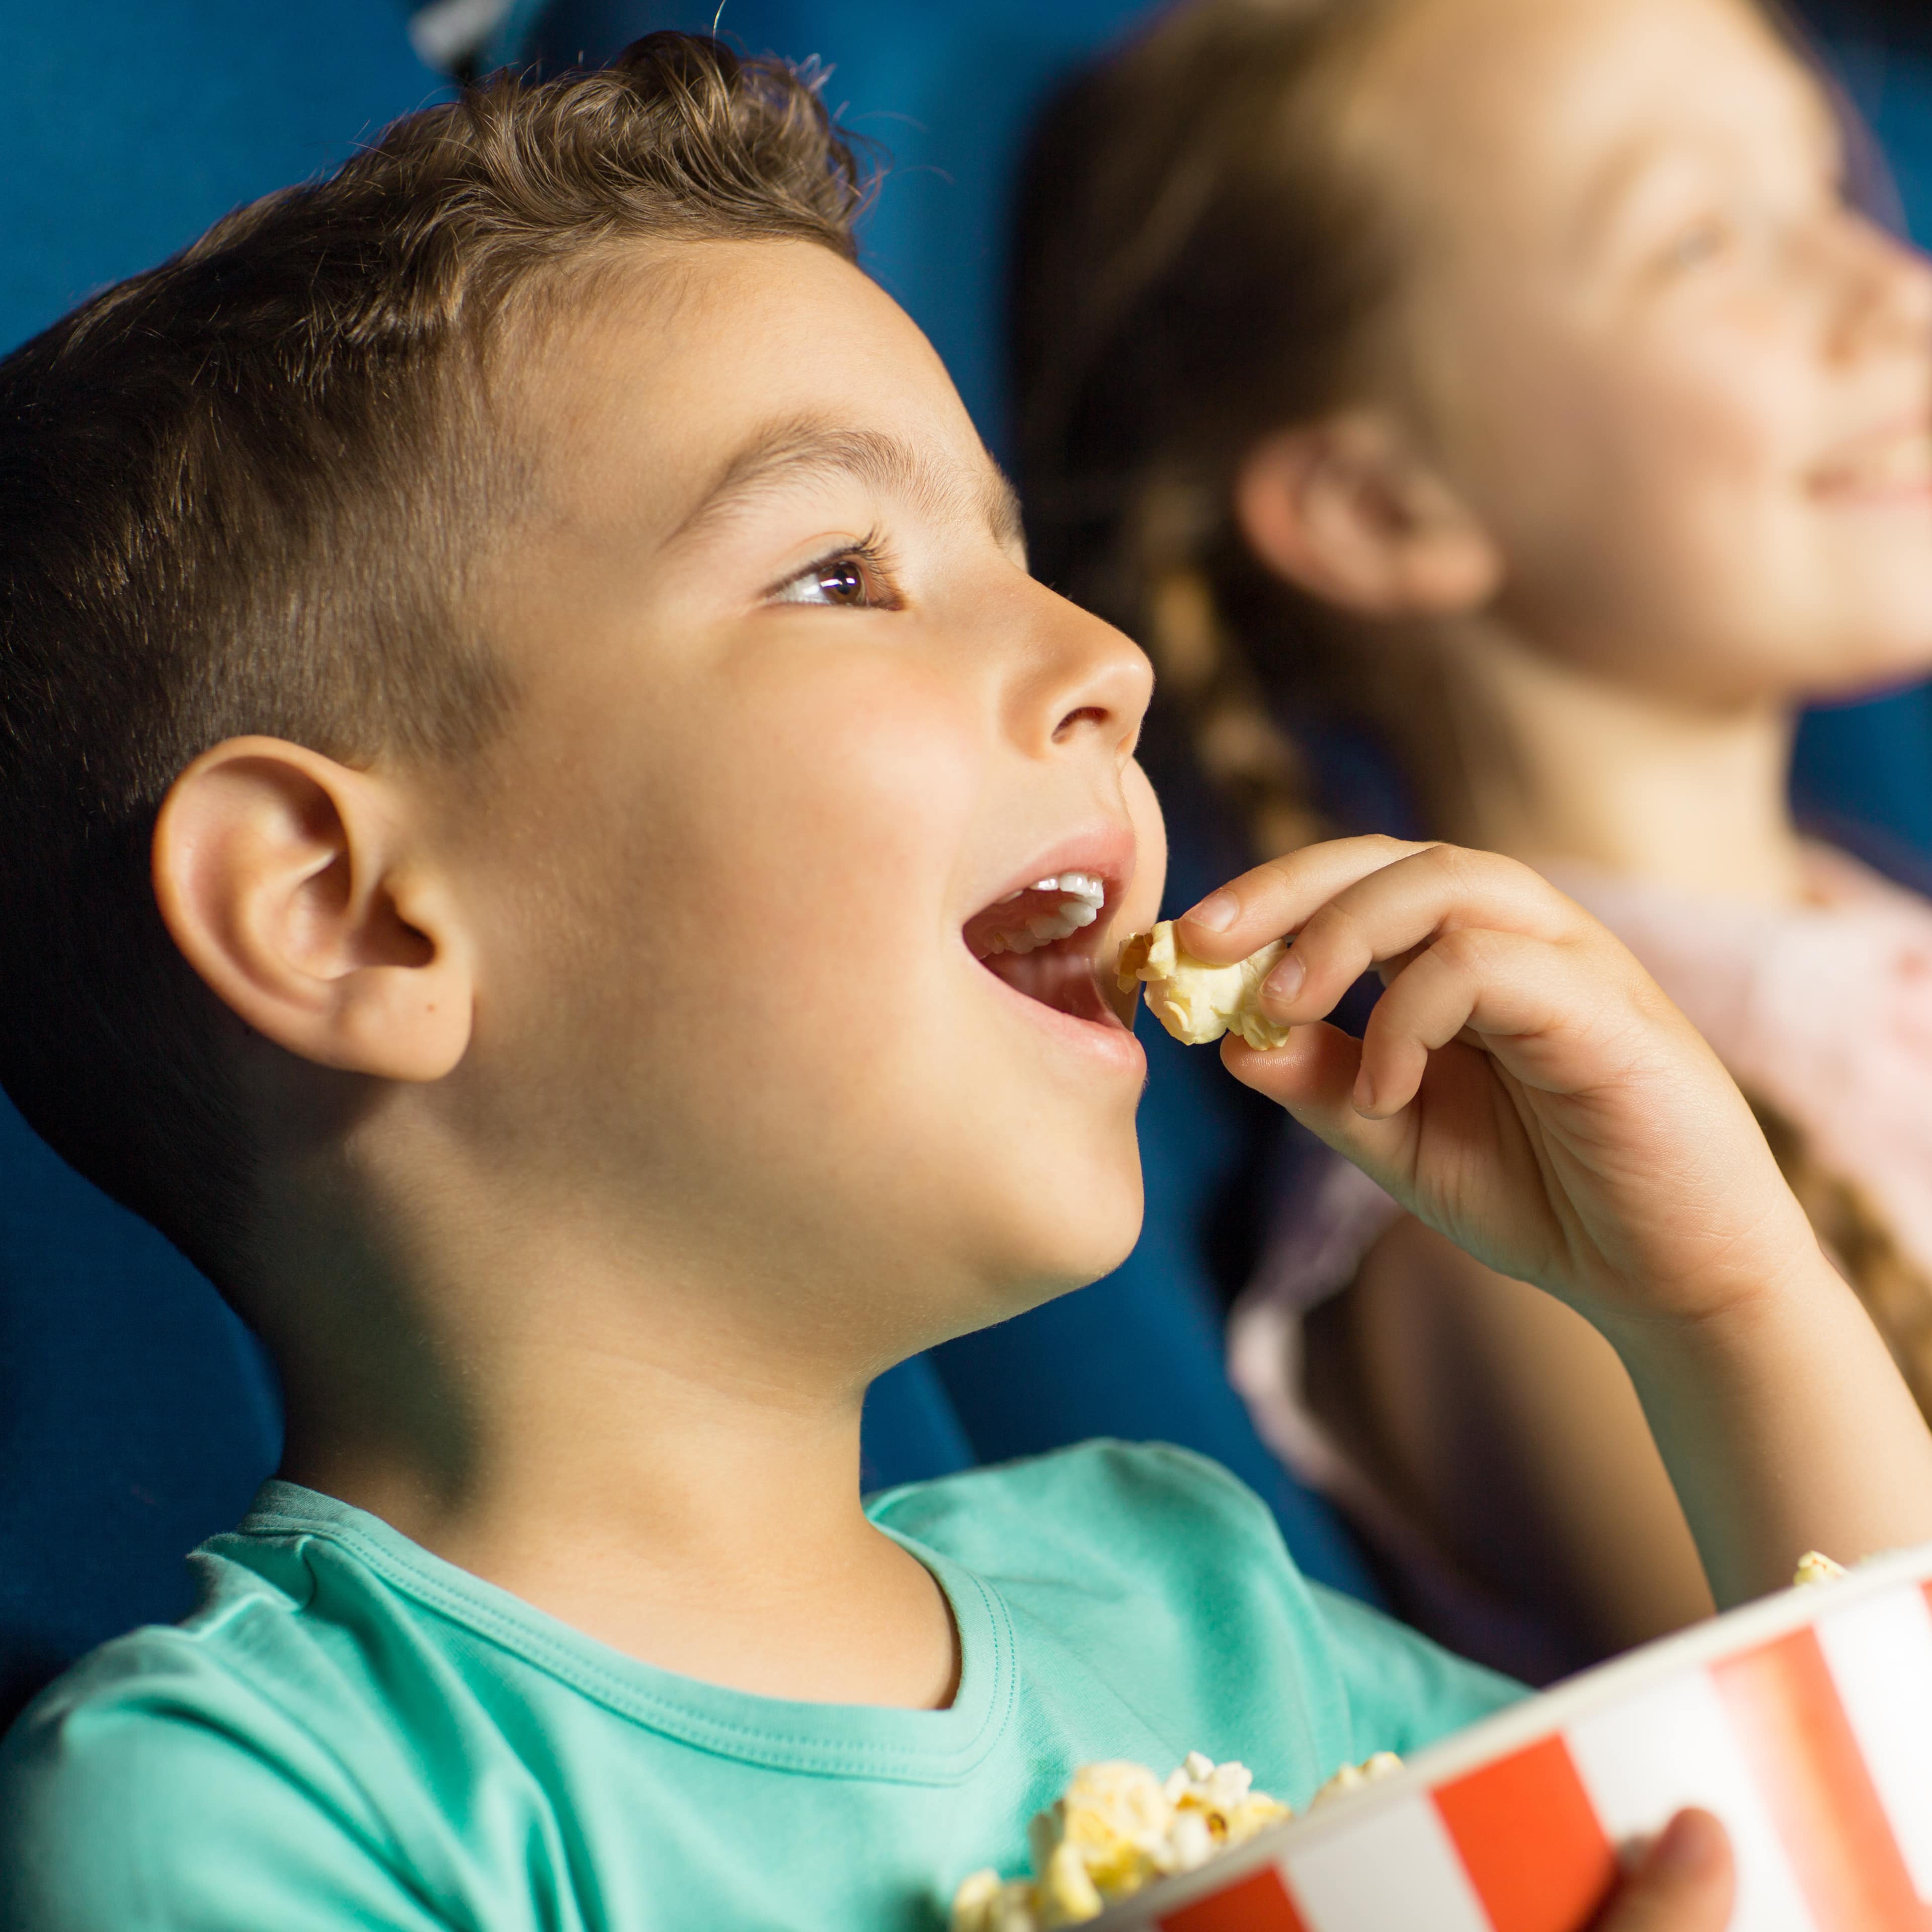 Ein Junge sitzt in einem blauen Kinositz und isst Popcorn aus einen rot-weiß gestreiften Eimer.